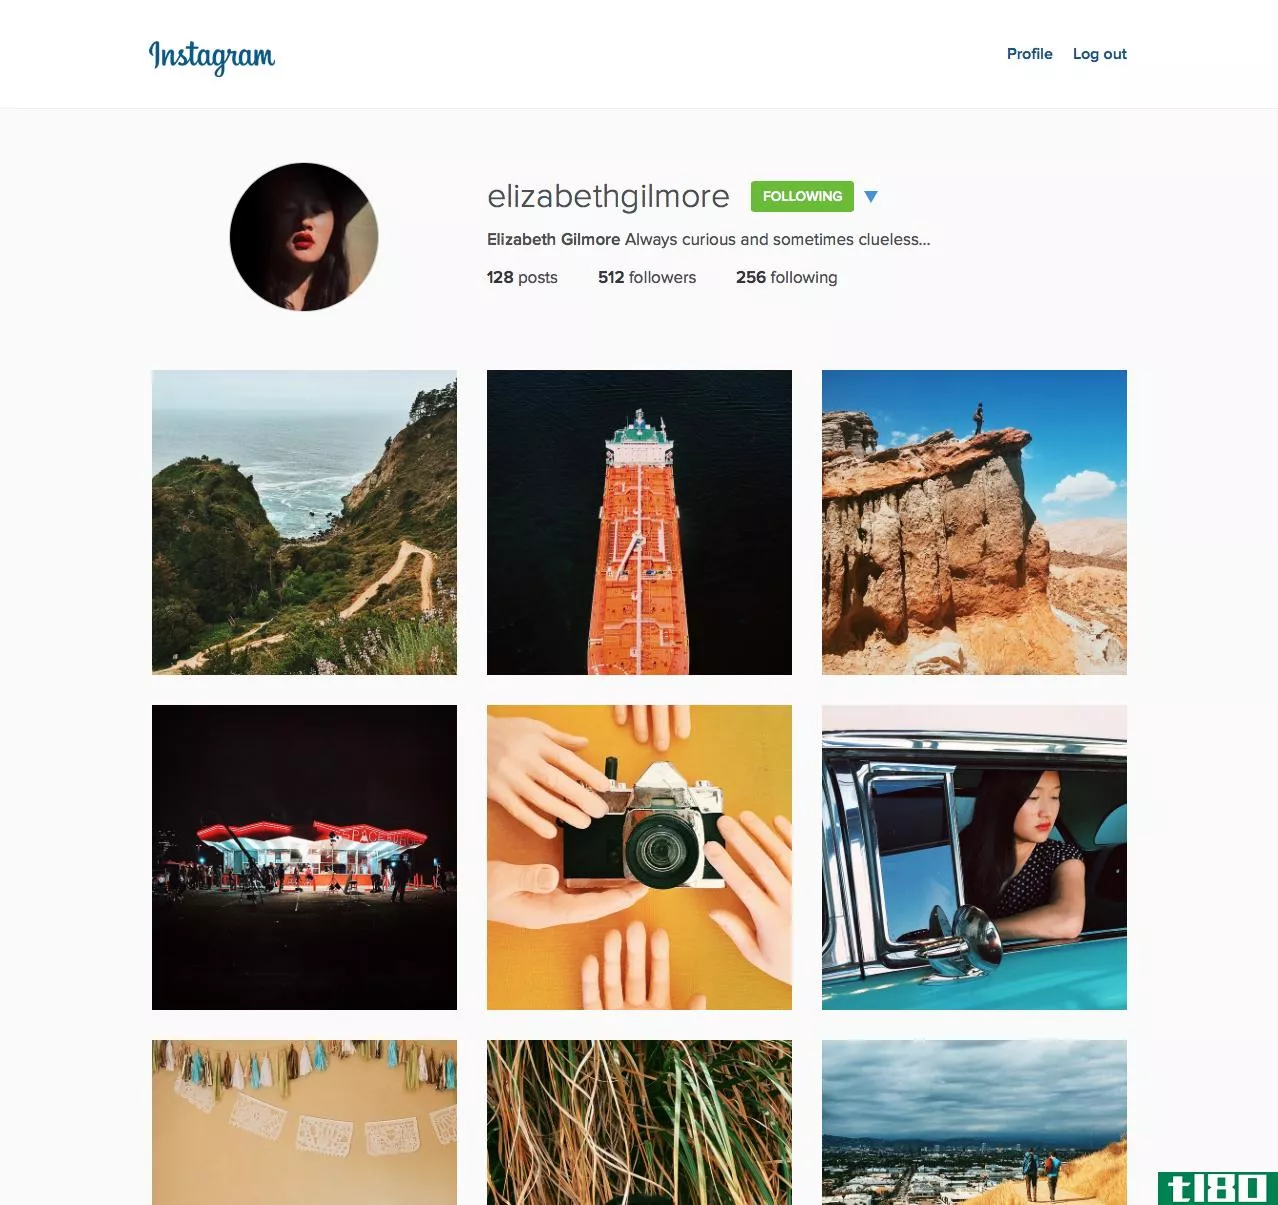 instagram正在推出一个重新设计的网站，网站上有更大的照片